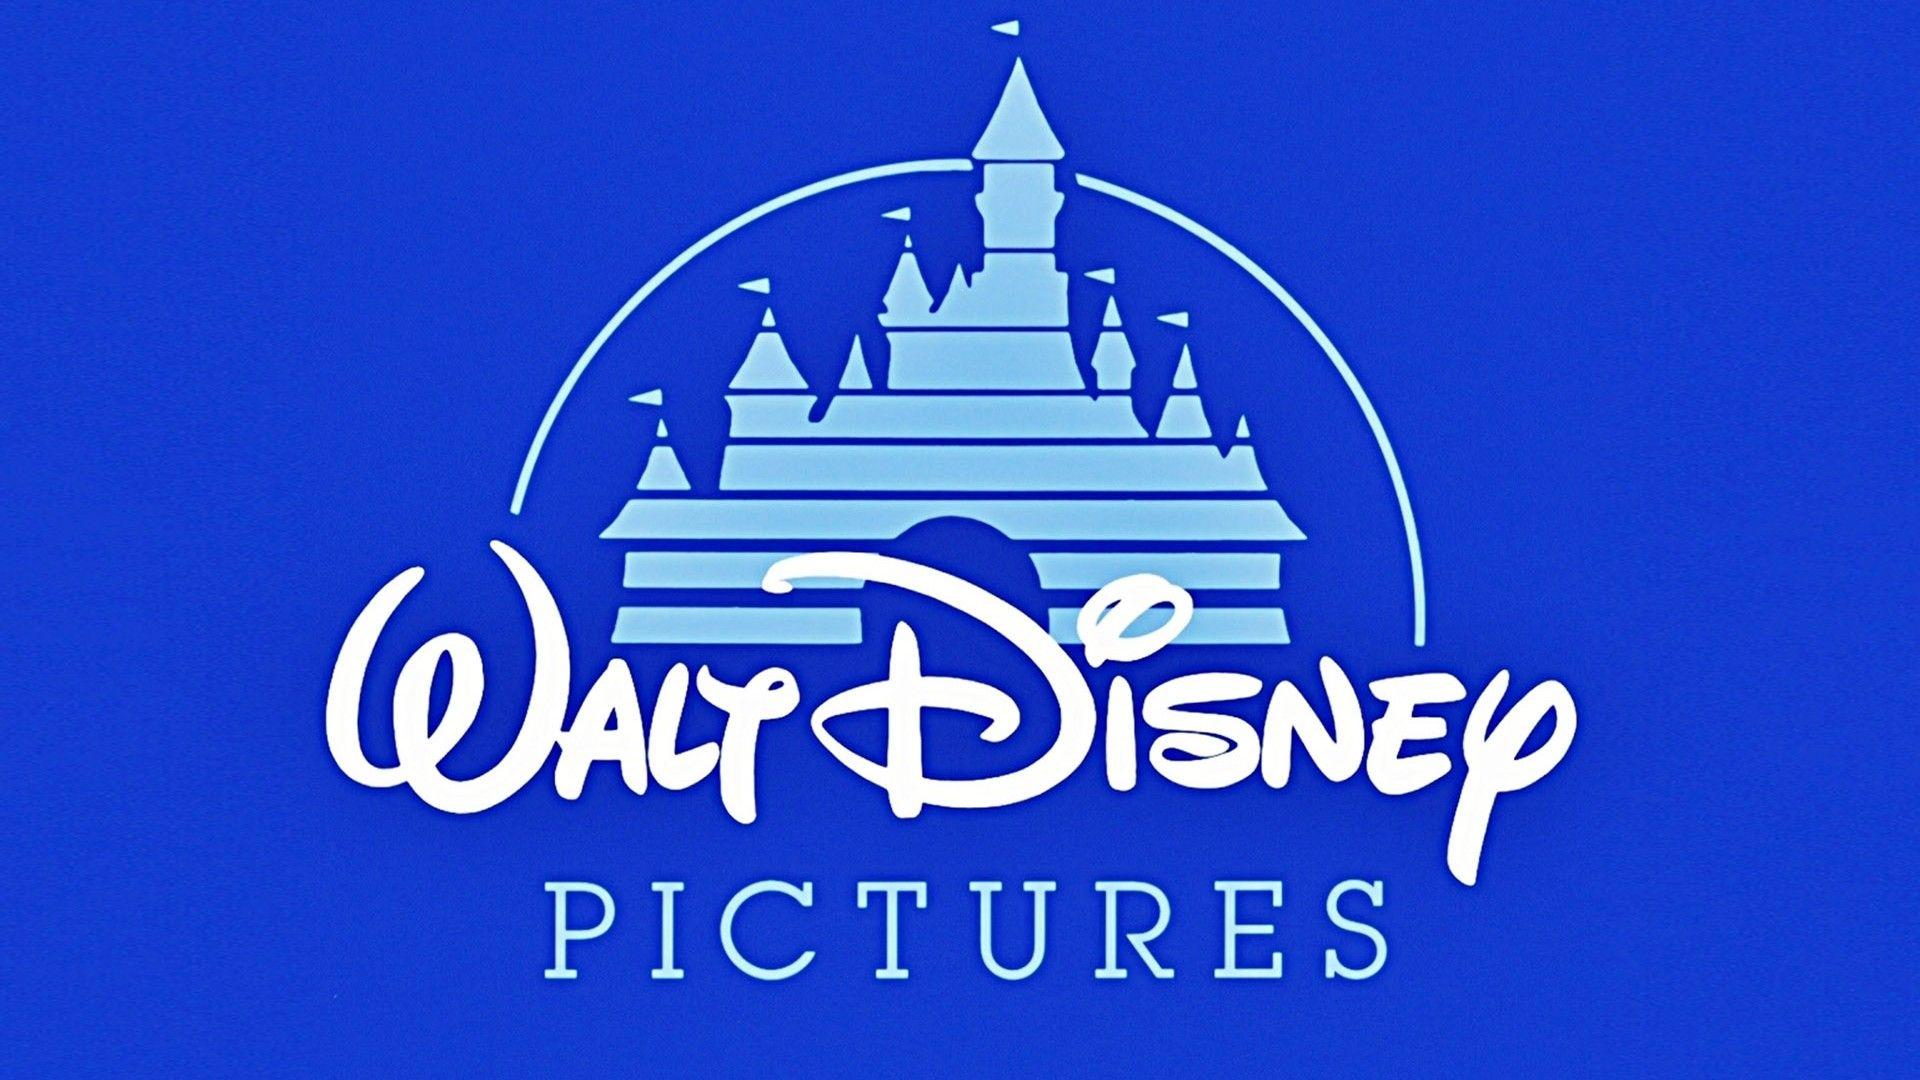 Walt Disney 1080p Wallpaper. High Definition Wallpaper